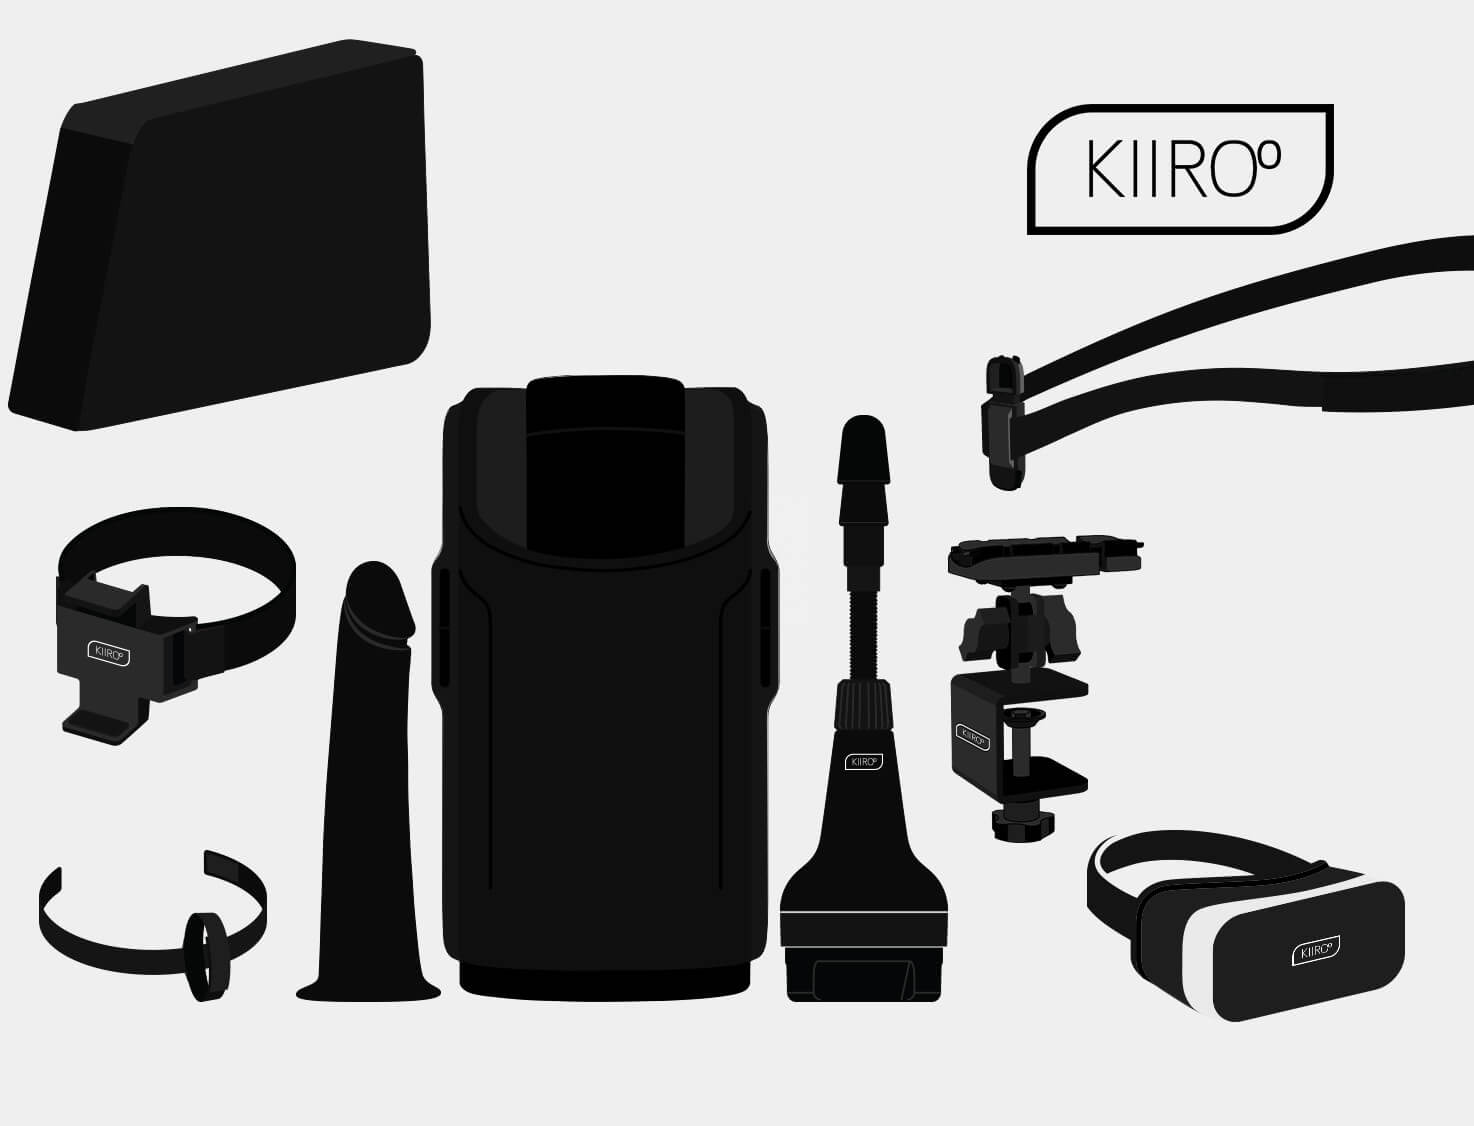 KEON by Kiiroo on Vimeo